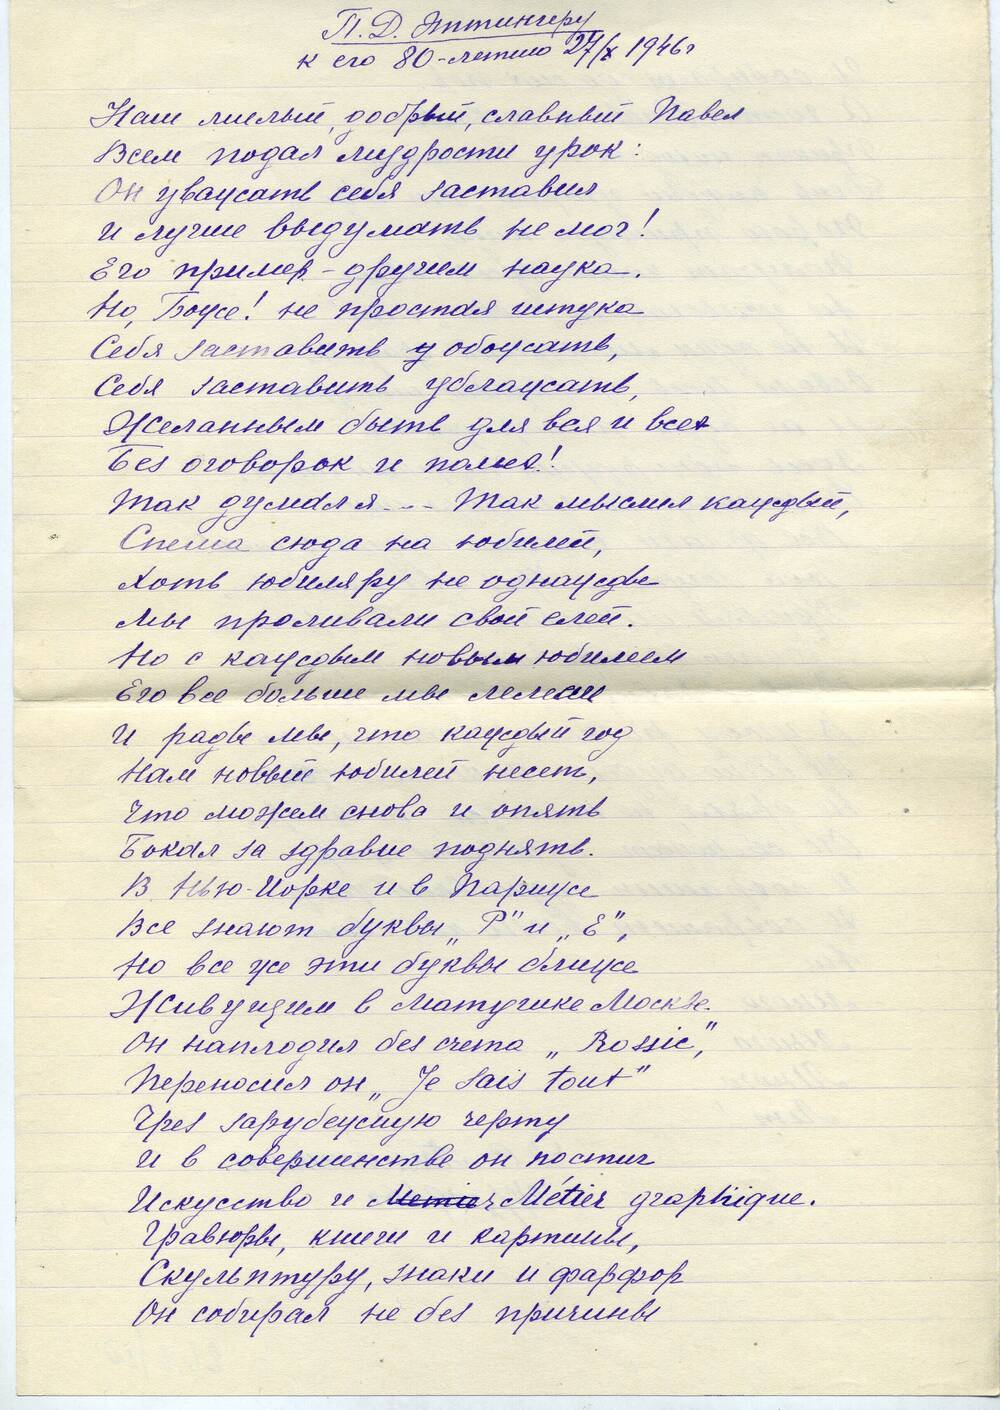 Стихотворение П.Д. Эттингеру к его 80-летию 27 октября 1946 г.